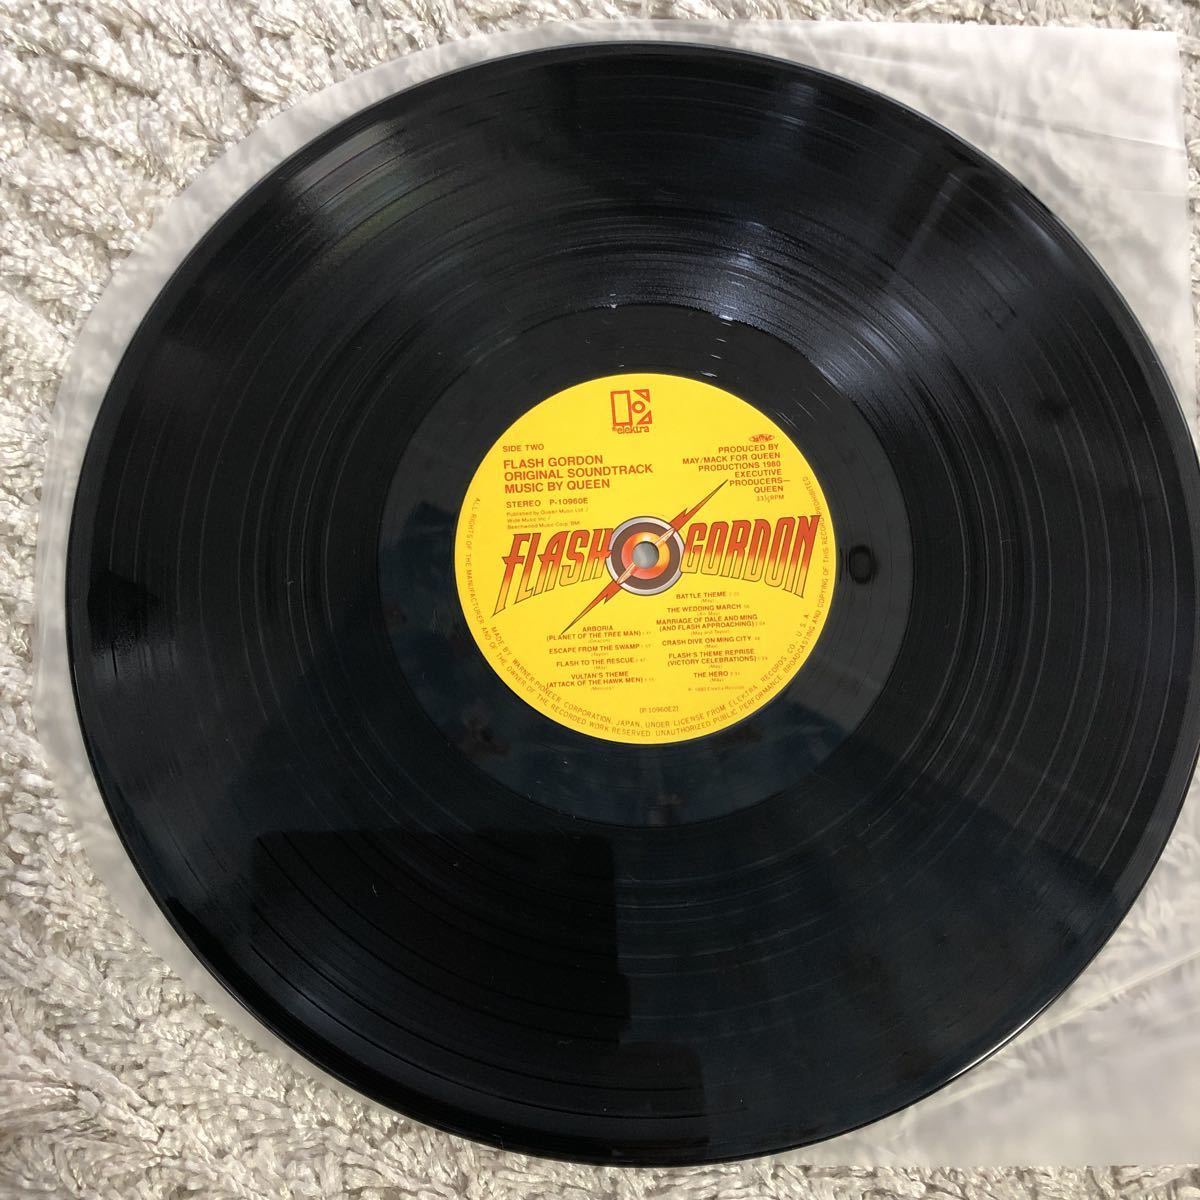 再生確認済★QUEEN フラッシュ・ゴードン オリジナル・サウンドトラック 中古LPレコード_画像6